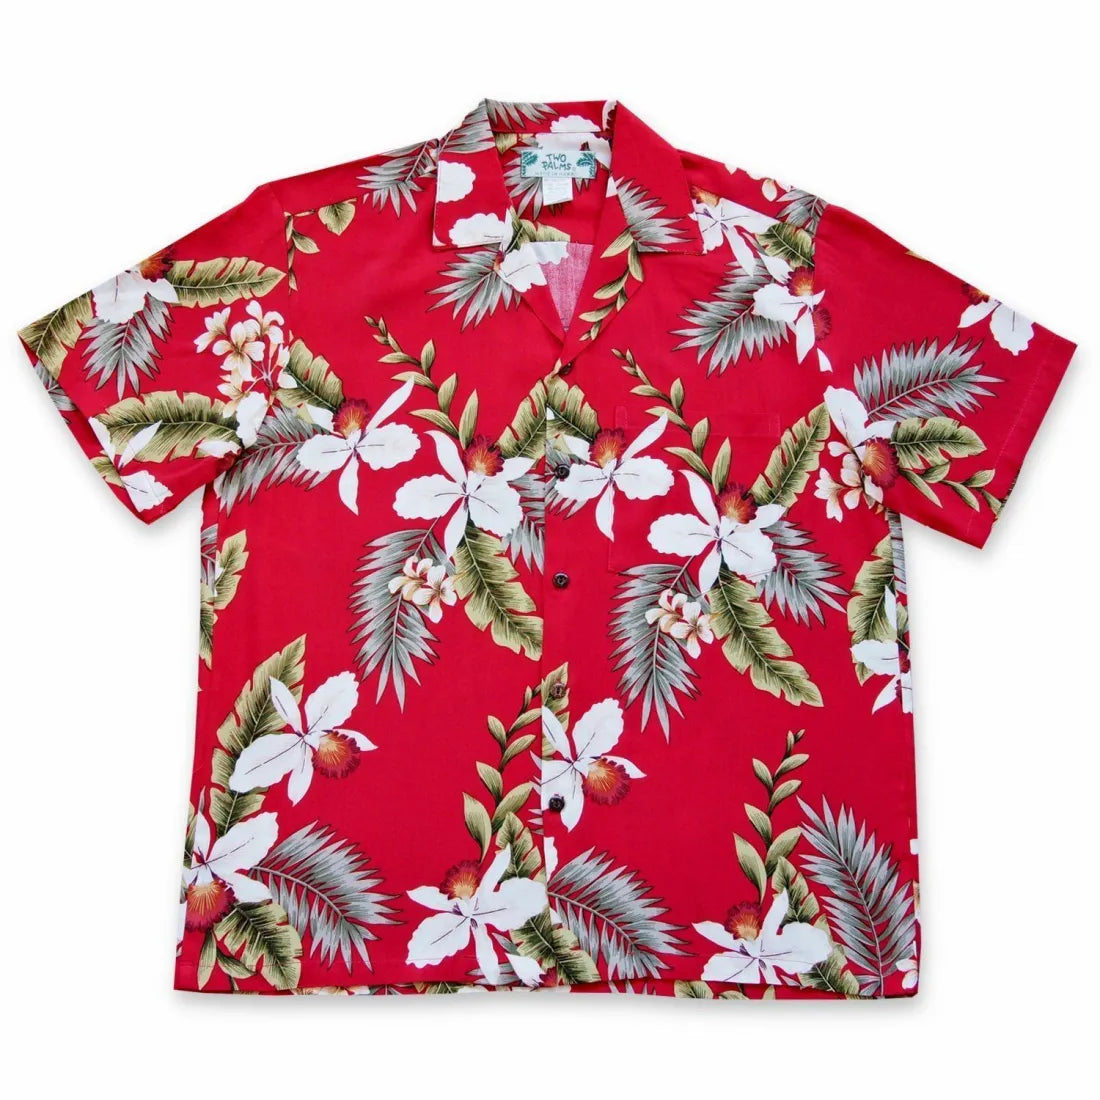 Volcanic Red Hawaiian Rayon Shirt - Made In Hawaii